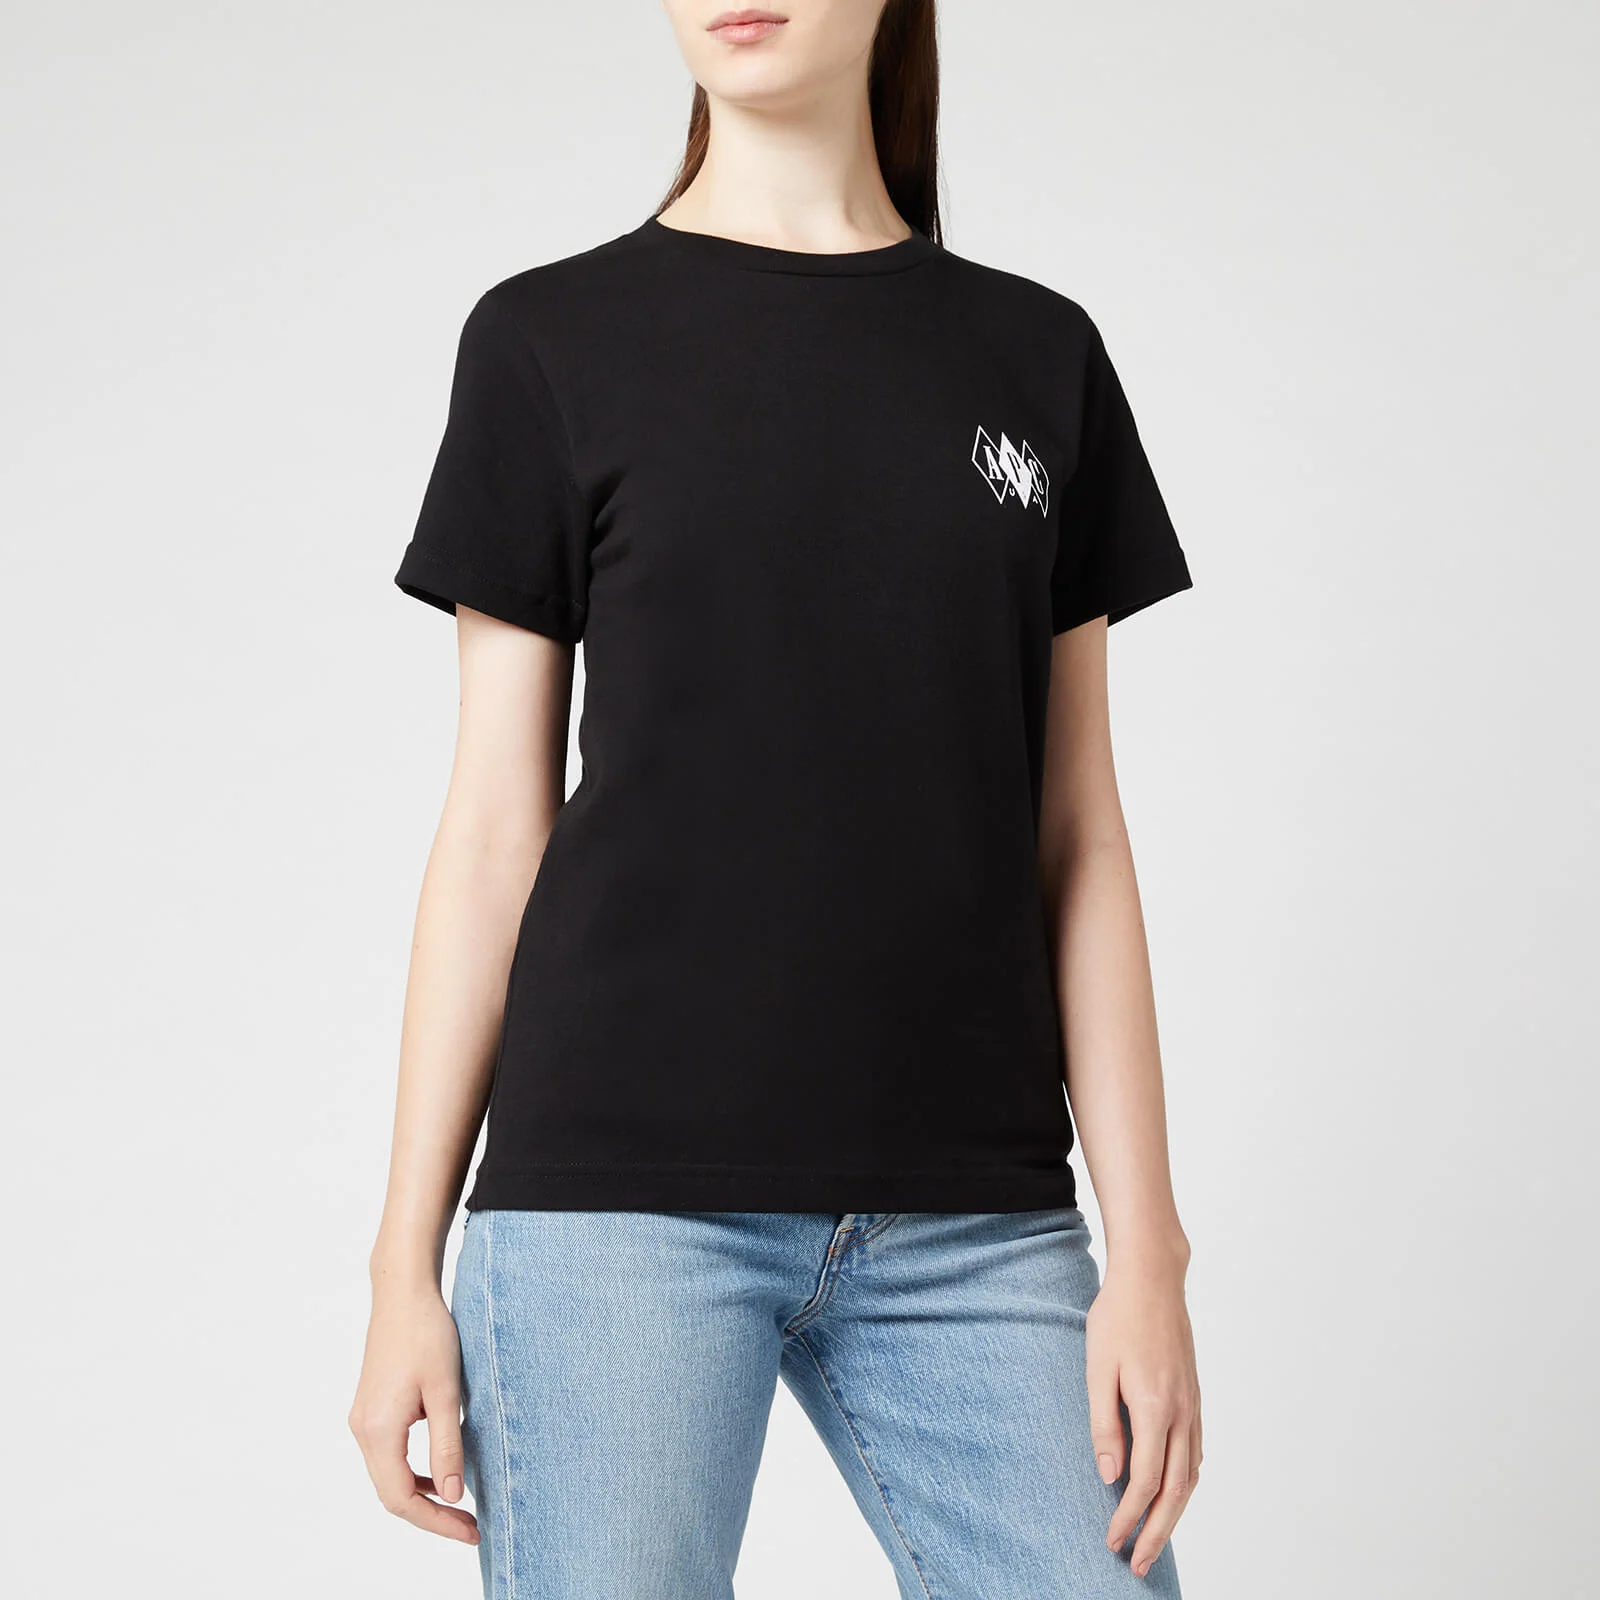 A.P.C. Women's Jessie T-Shirt - Black Image 1